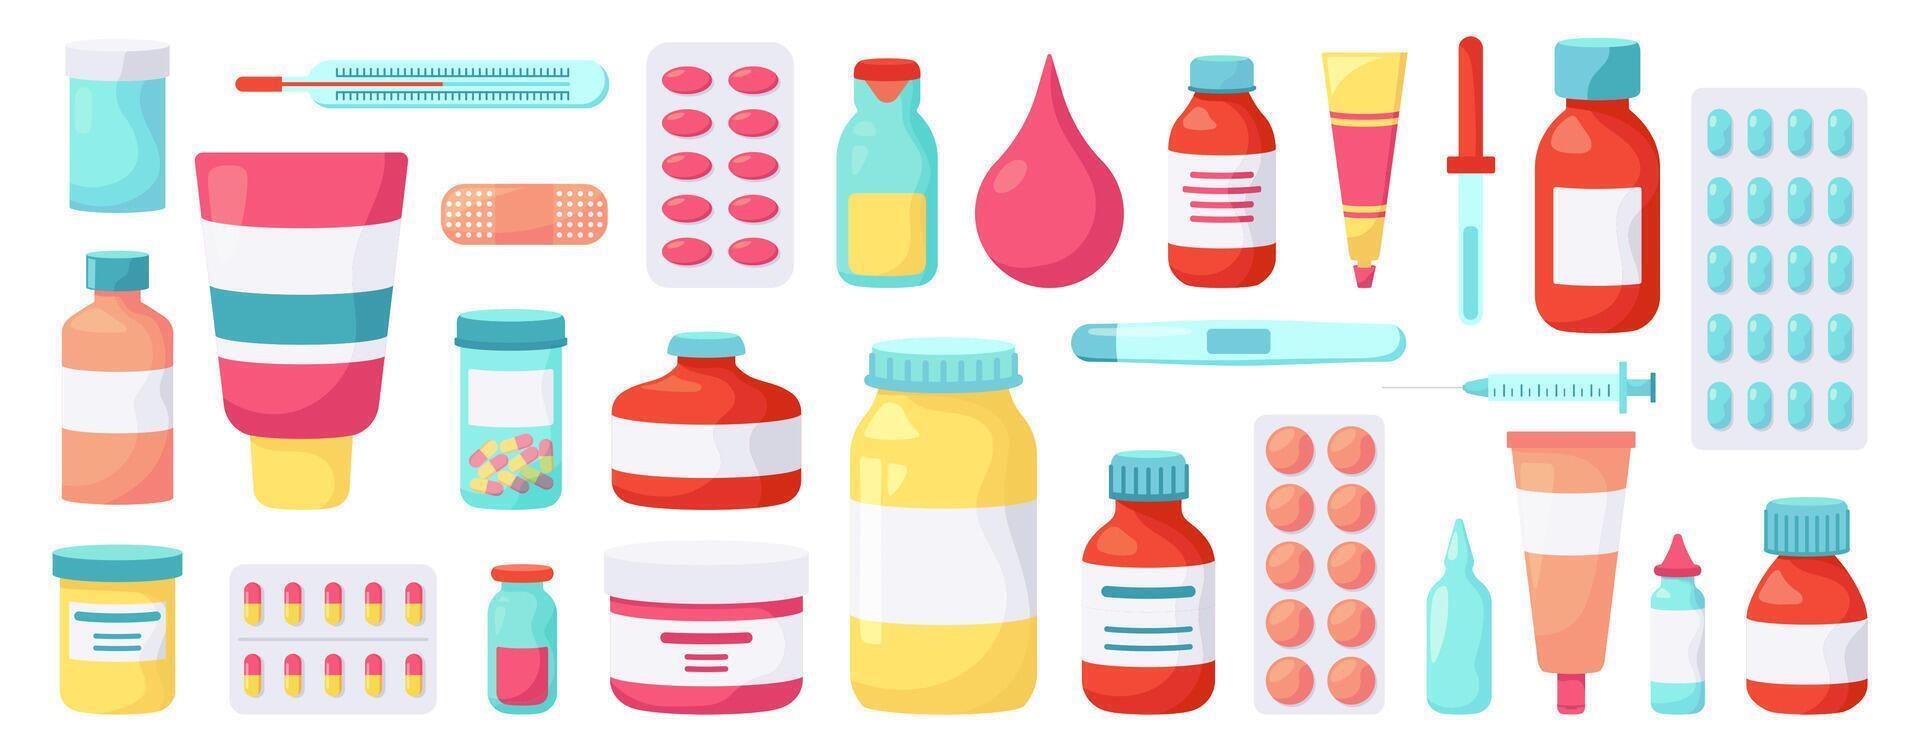 farmacia medicamentos medicina drogas, farmacéutico tratamiento, vitaminas ampolla paquetes, medicina pastillas botellas vector ilustración íconos conjunto